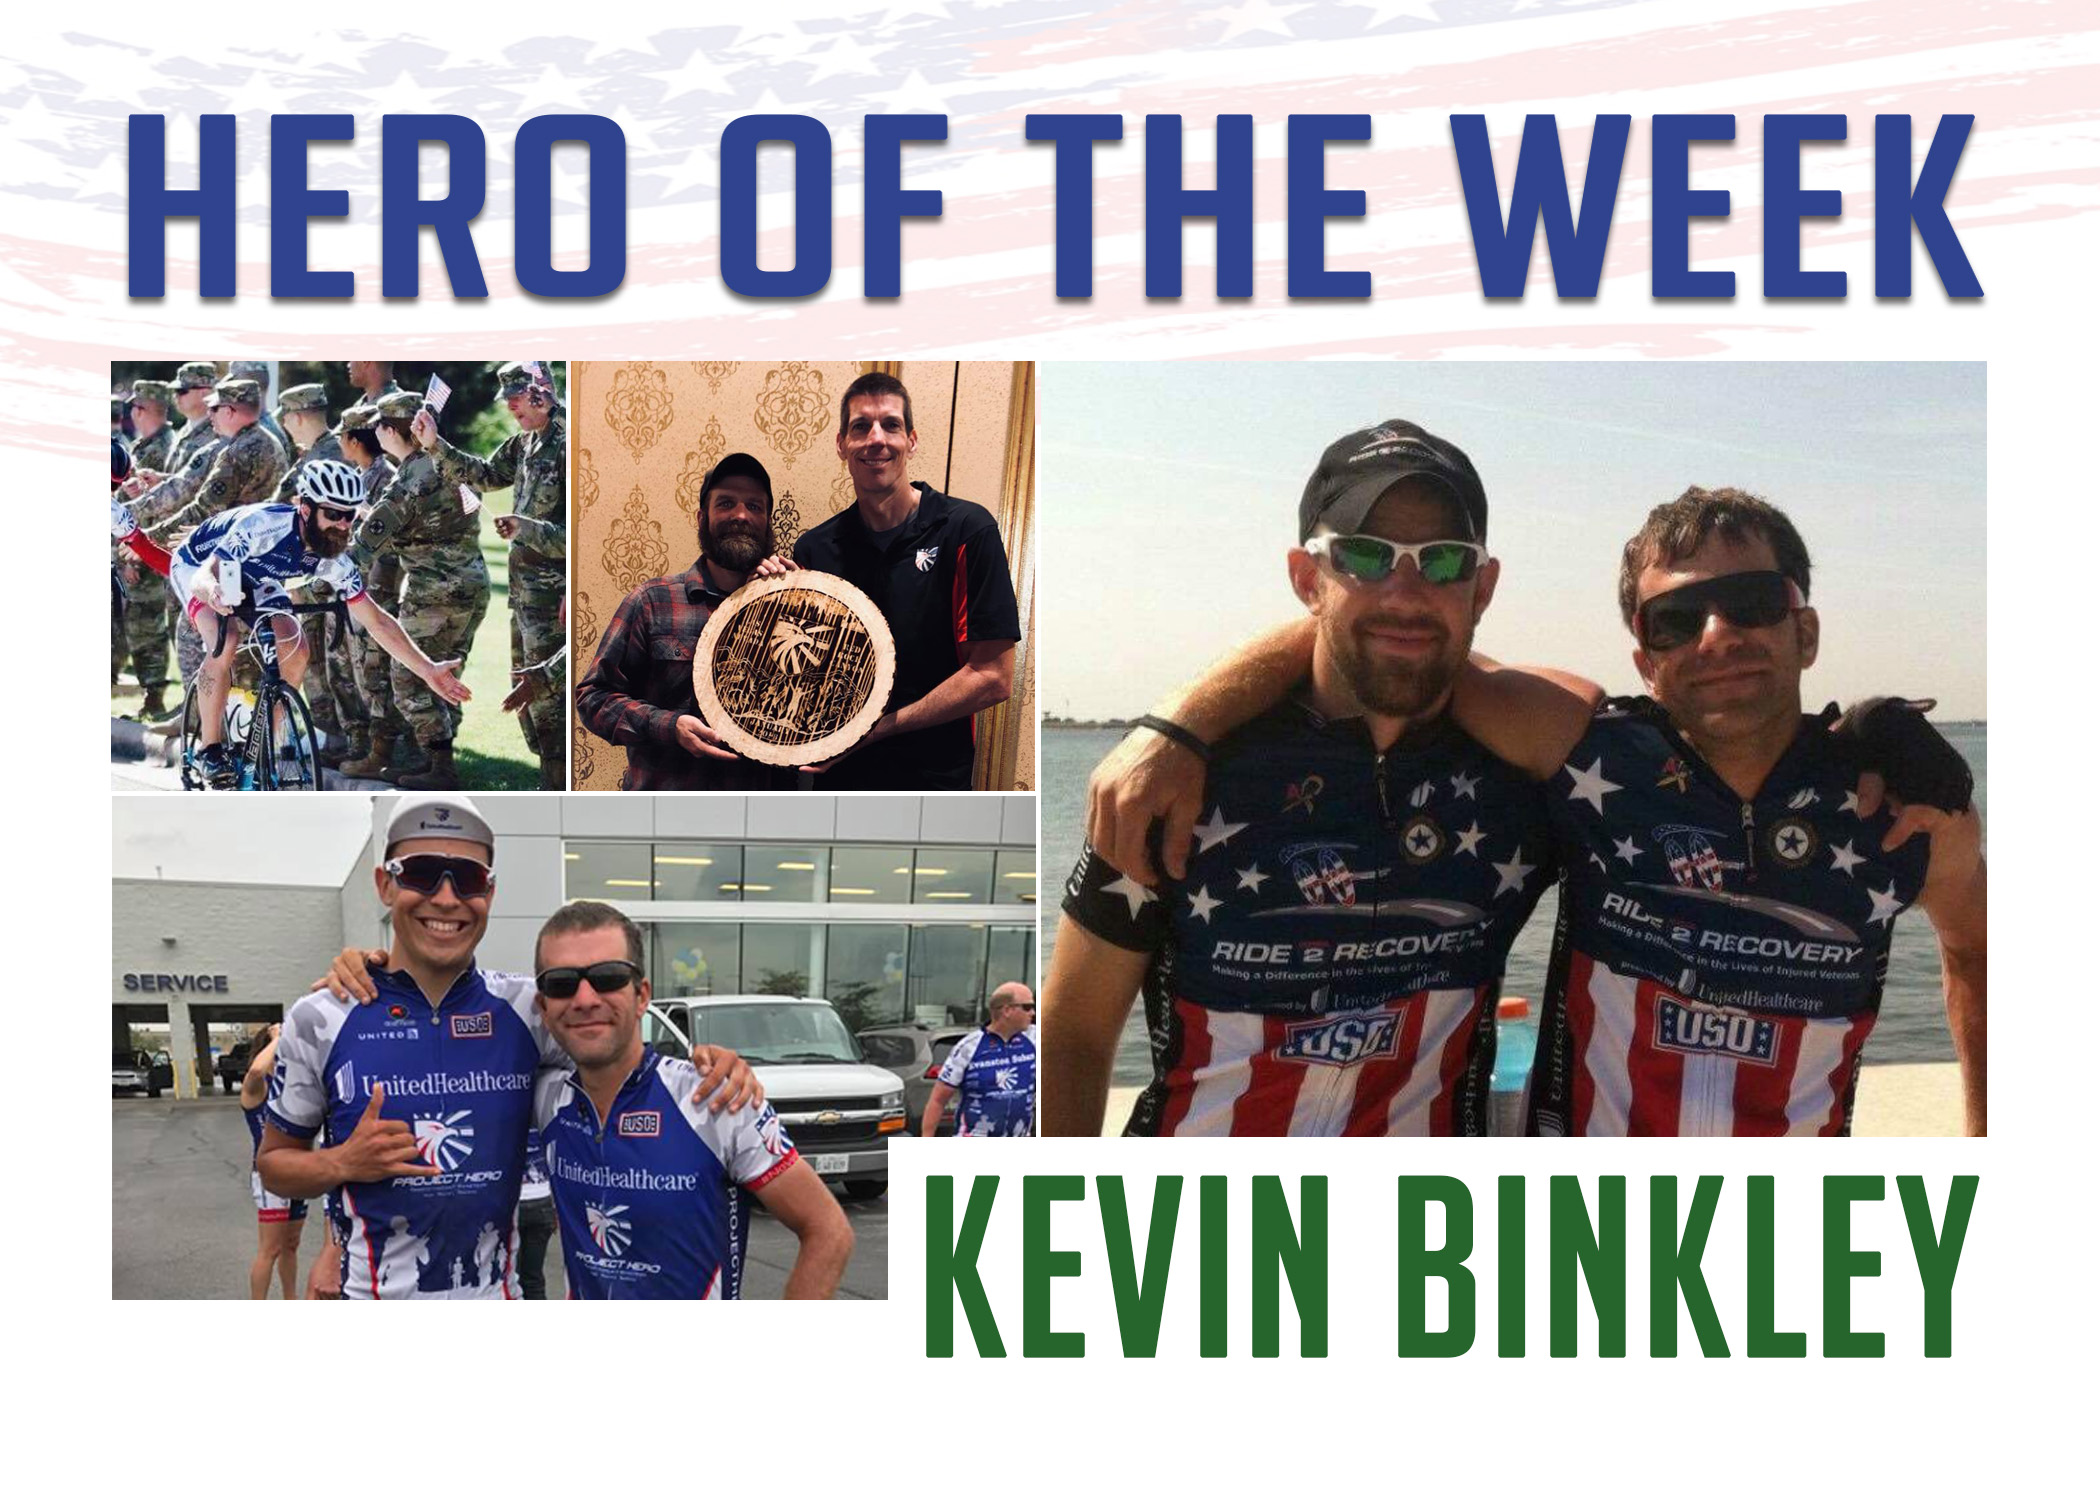 Hero of the Week: Kevin Binkley